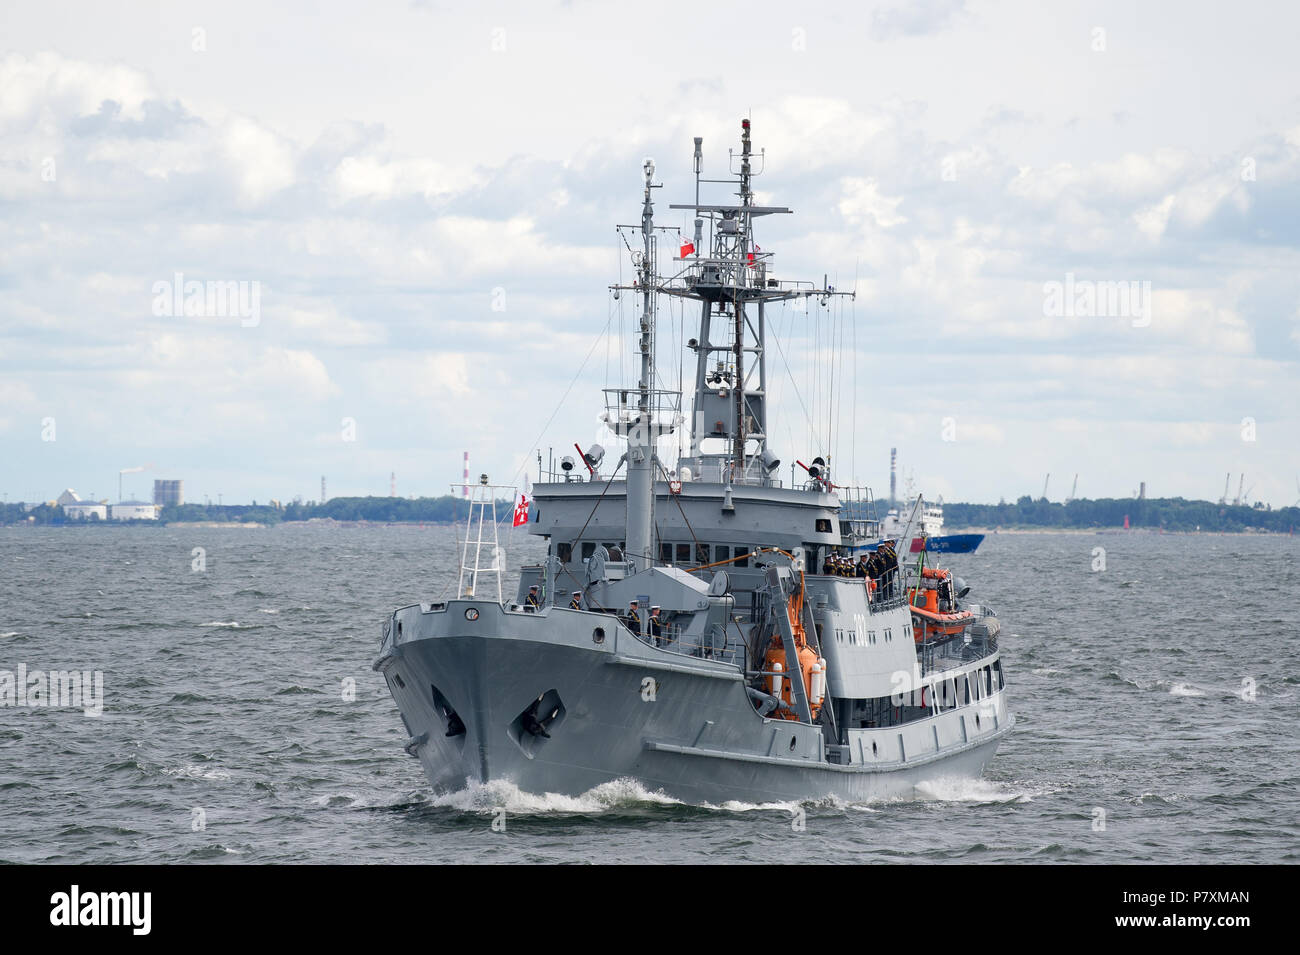 Piast polonais-class-sauvetage bateau de sauvetage 282 ORP Lech durant la parade navale pour célébrer la 100e annversary de marine polonaise de Gdynia, Pologne. 24 juin 2018 Banque D'Images